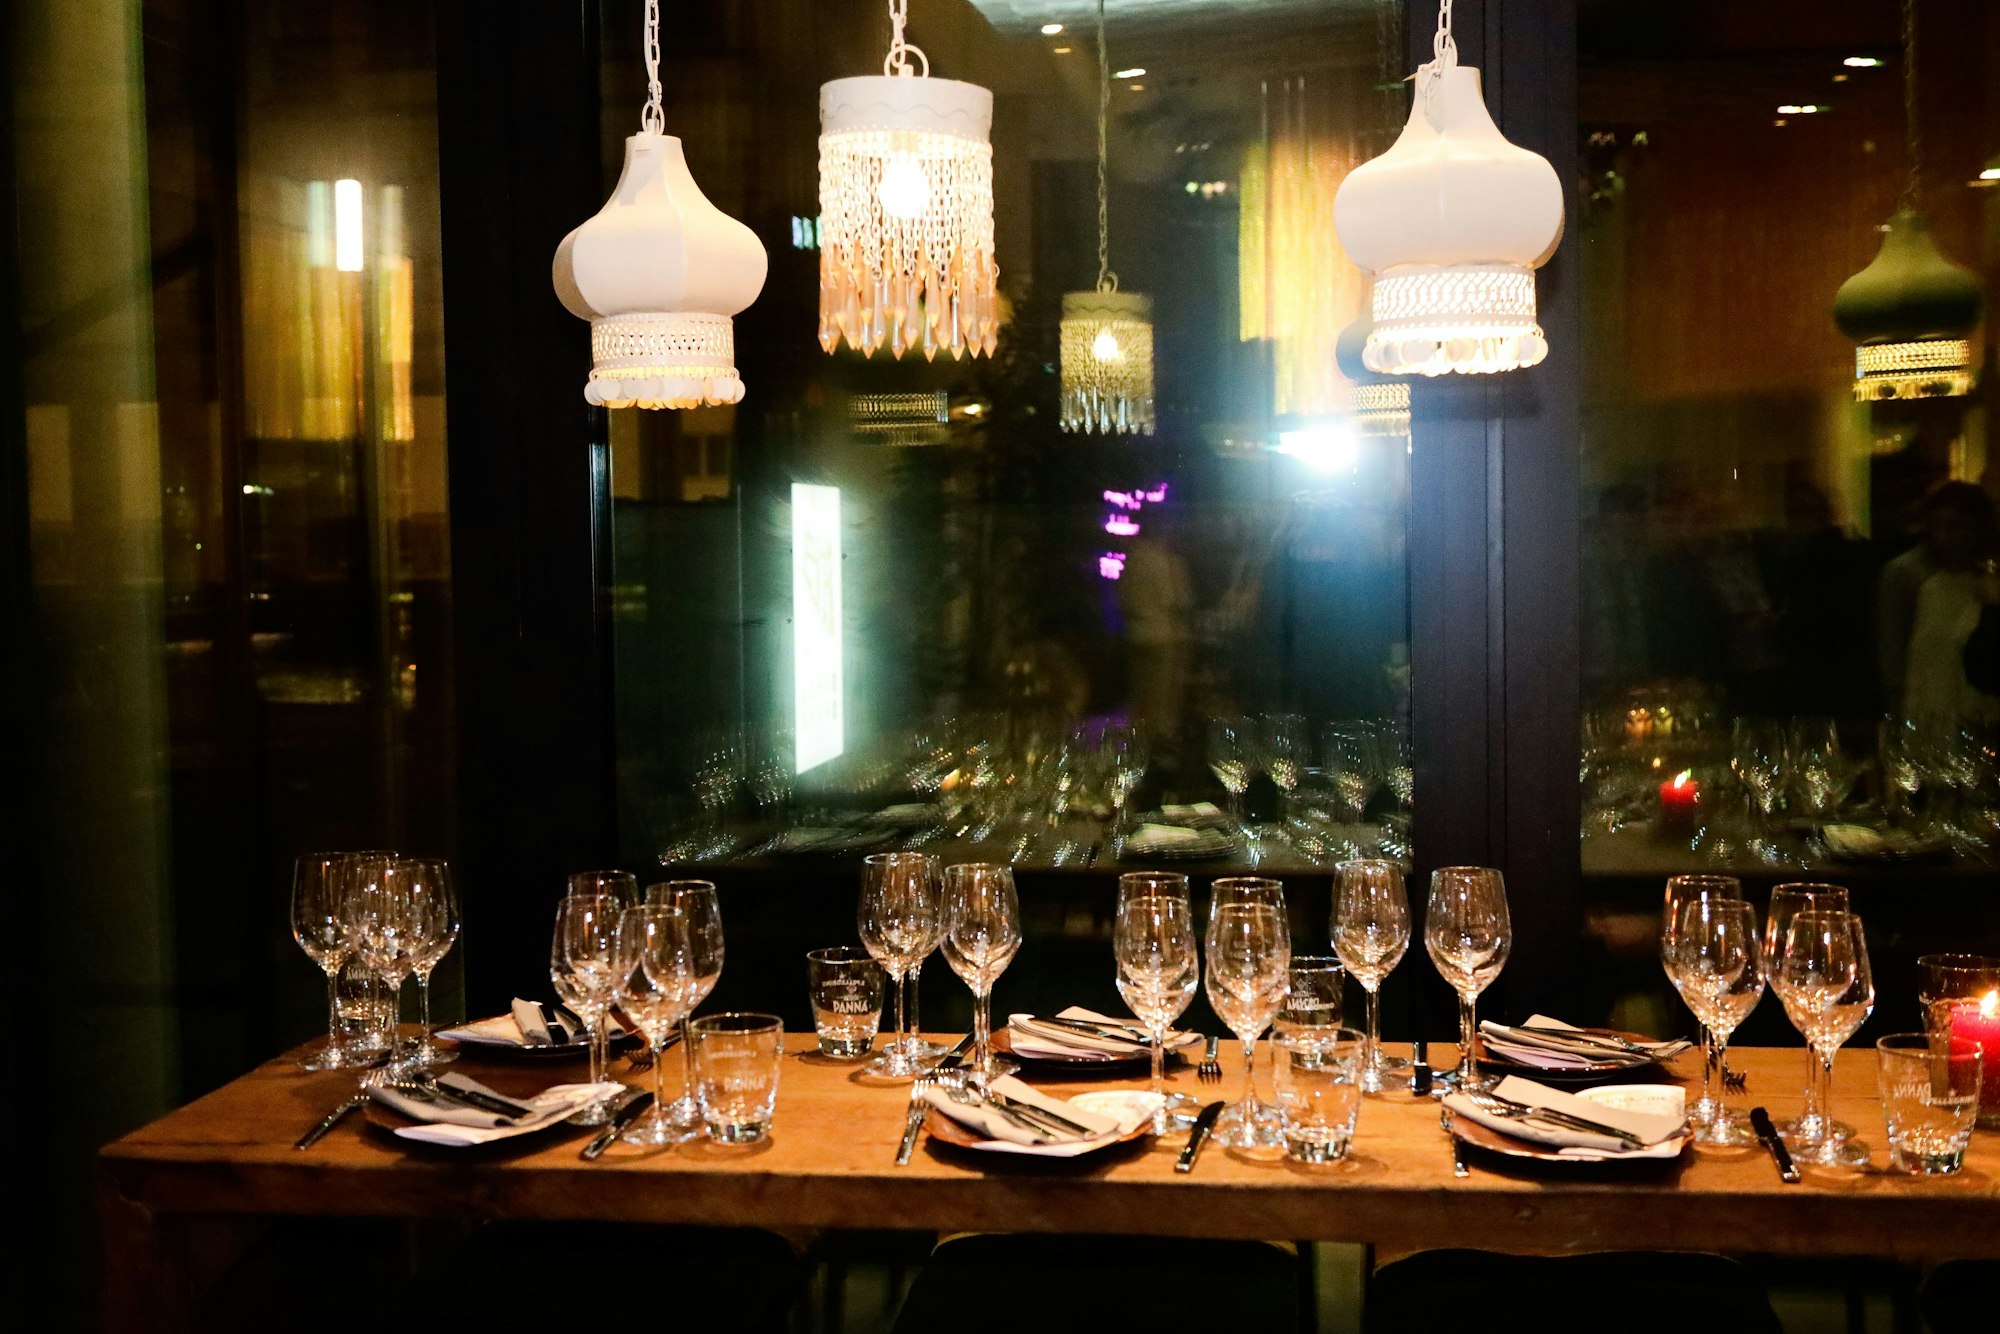 Ein gedeckter Tisch vor dunklen Fensterscheiben, von der Decke hängen Lampen mit orientalischen Stoffschirmen.